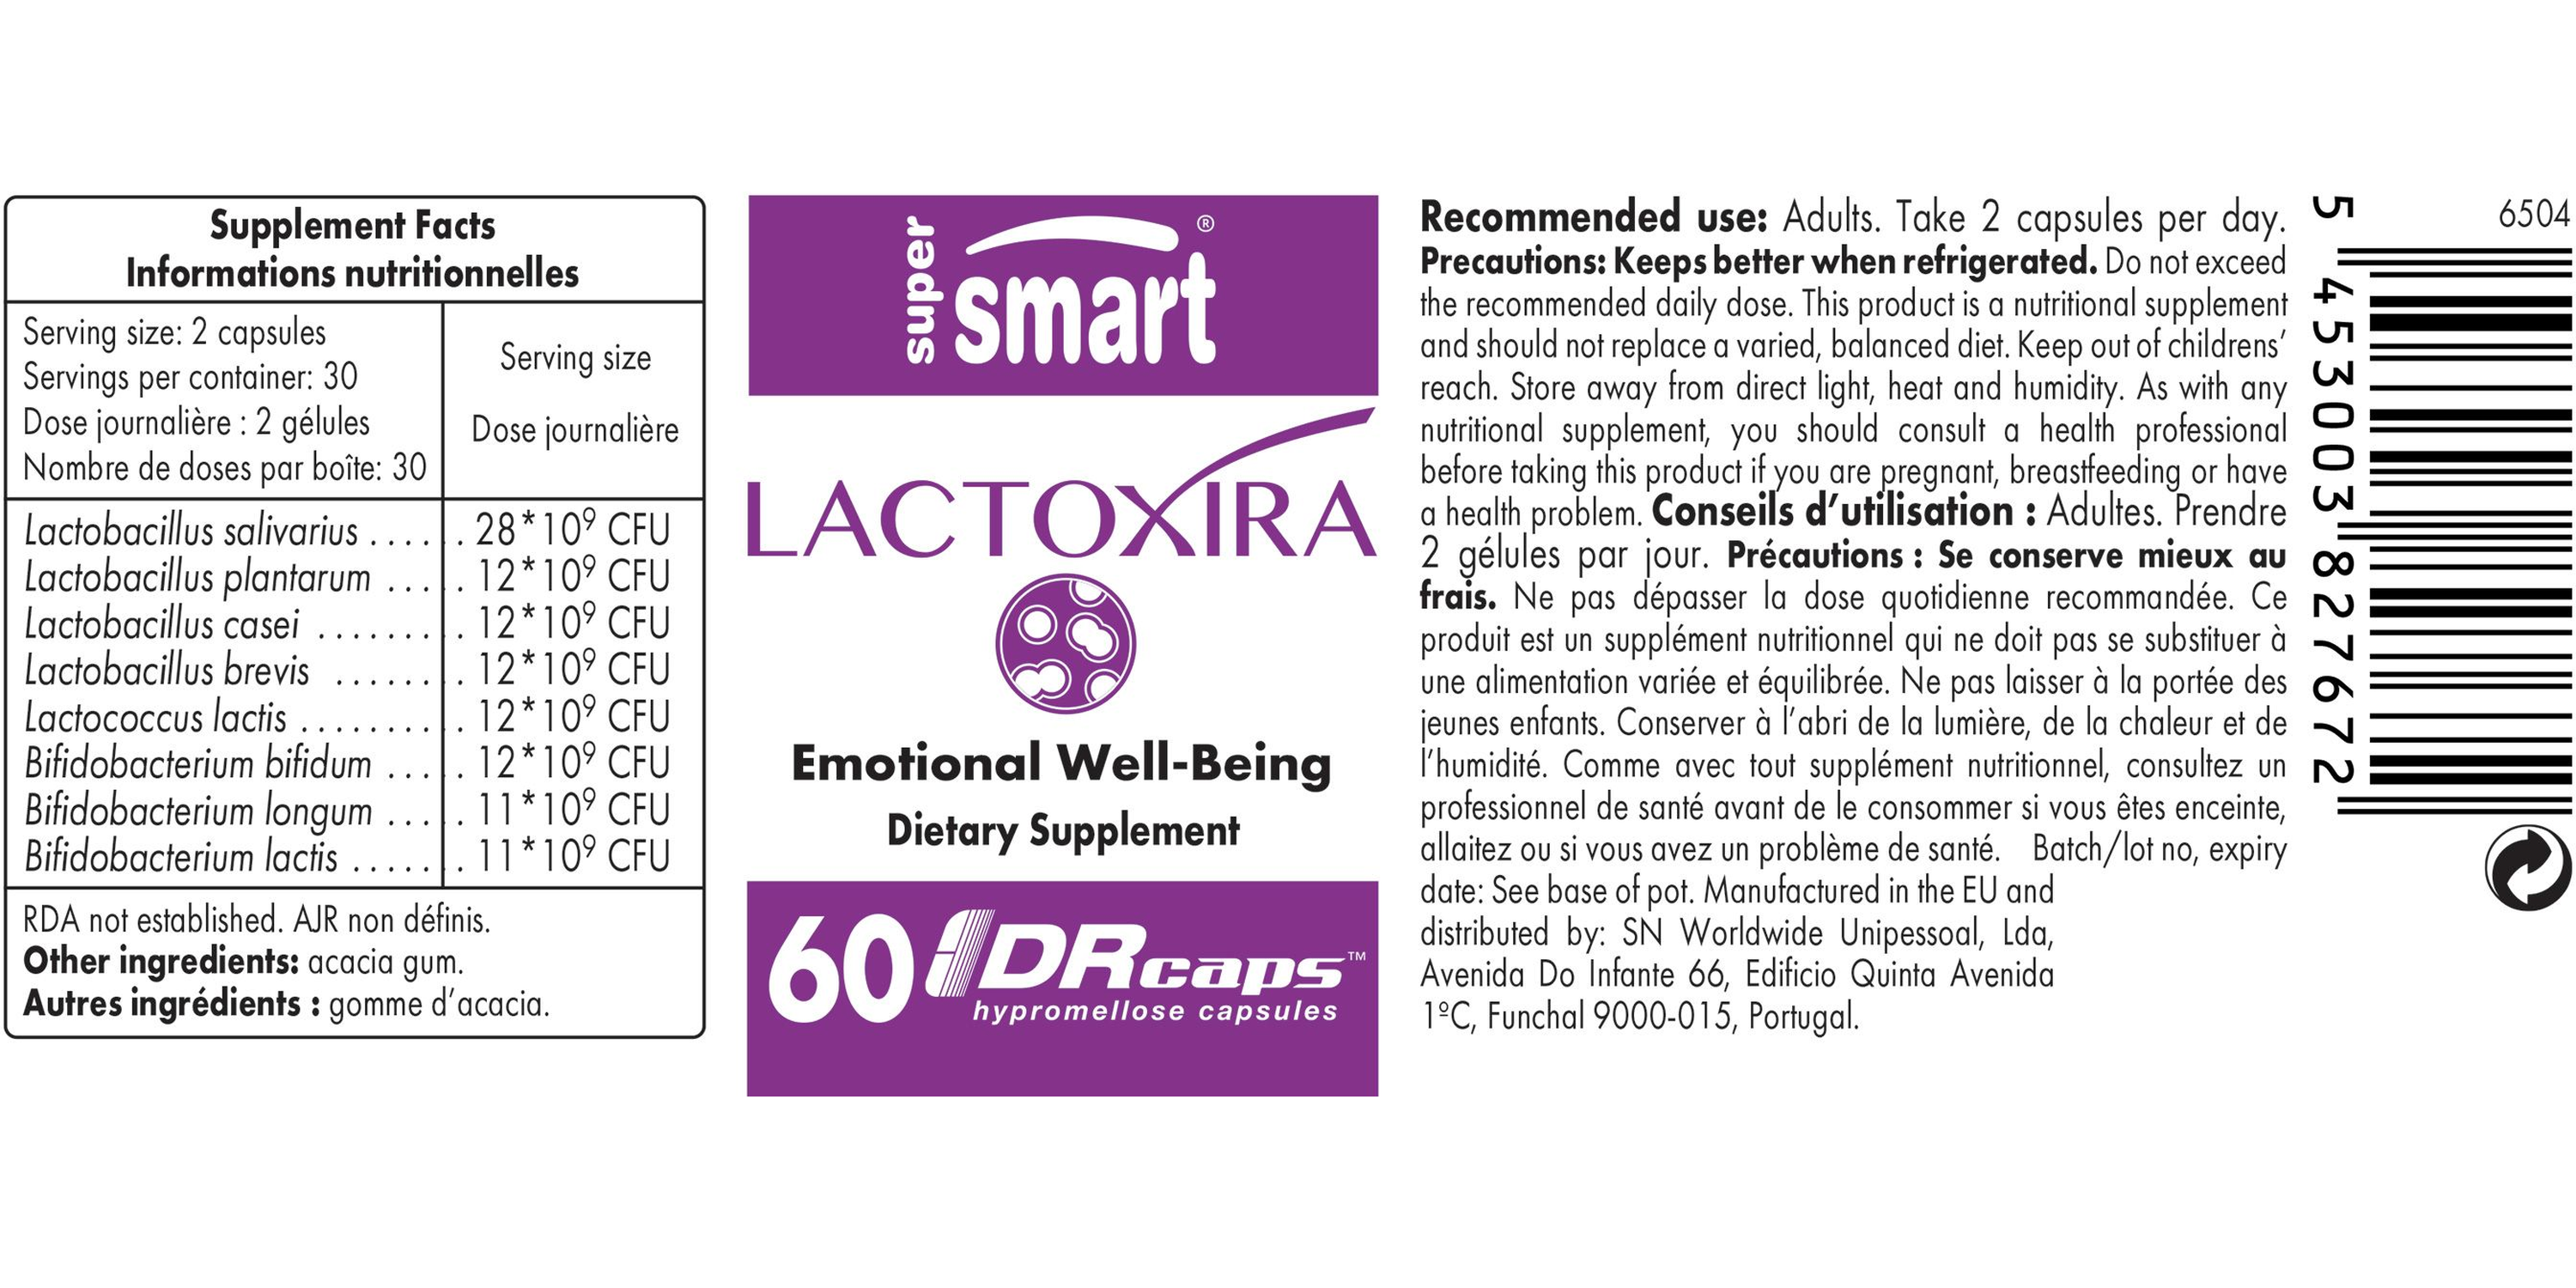 Lactoxira Supplement 